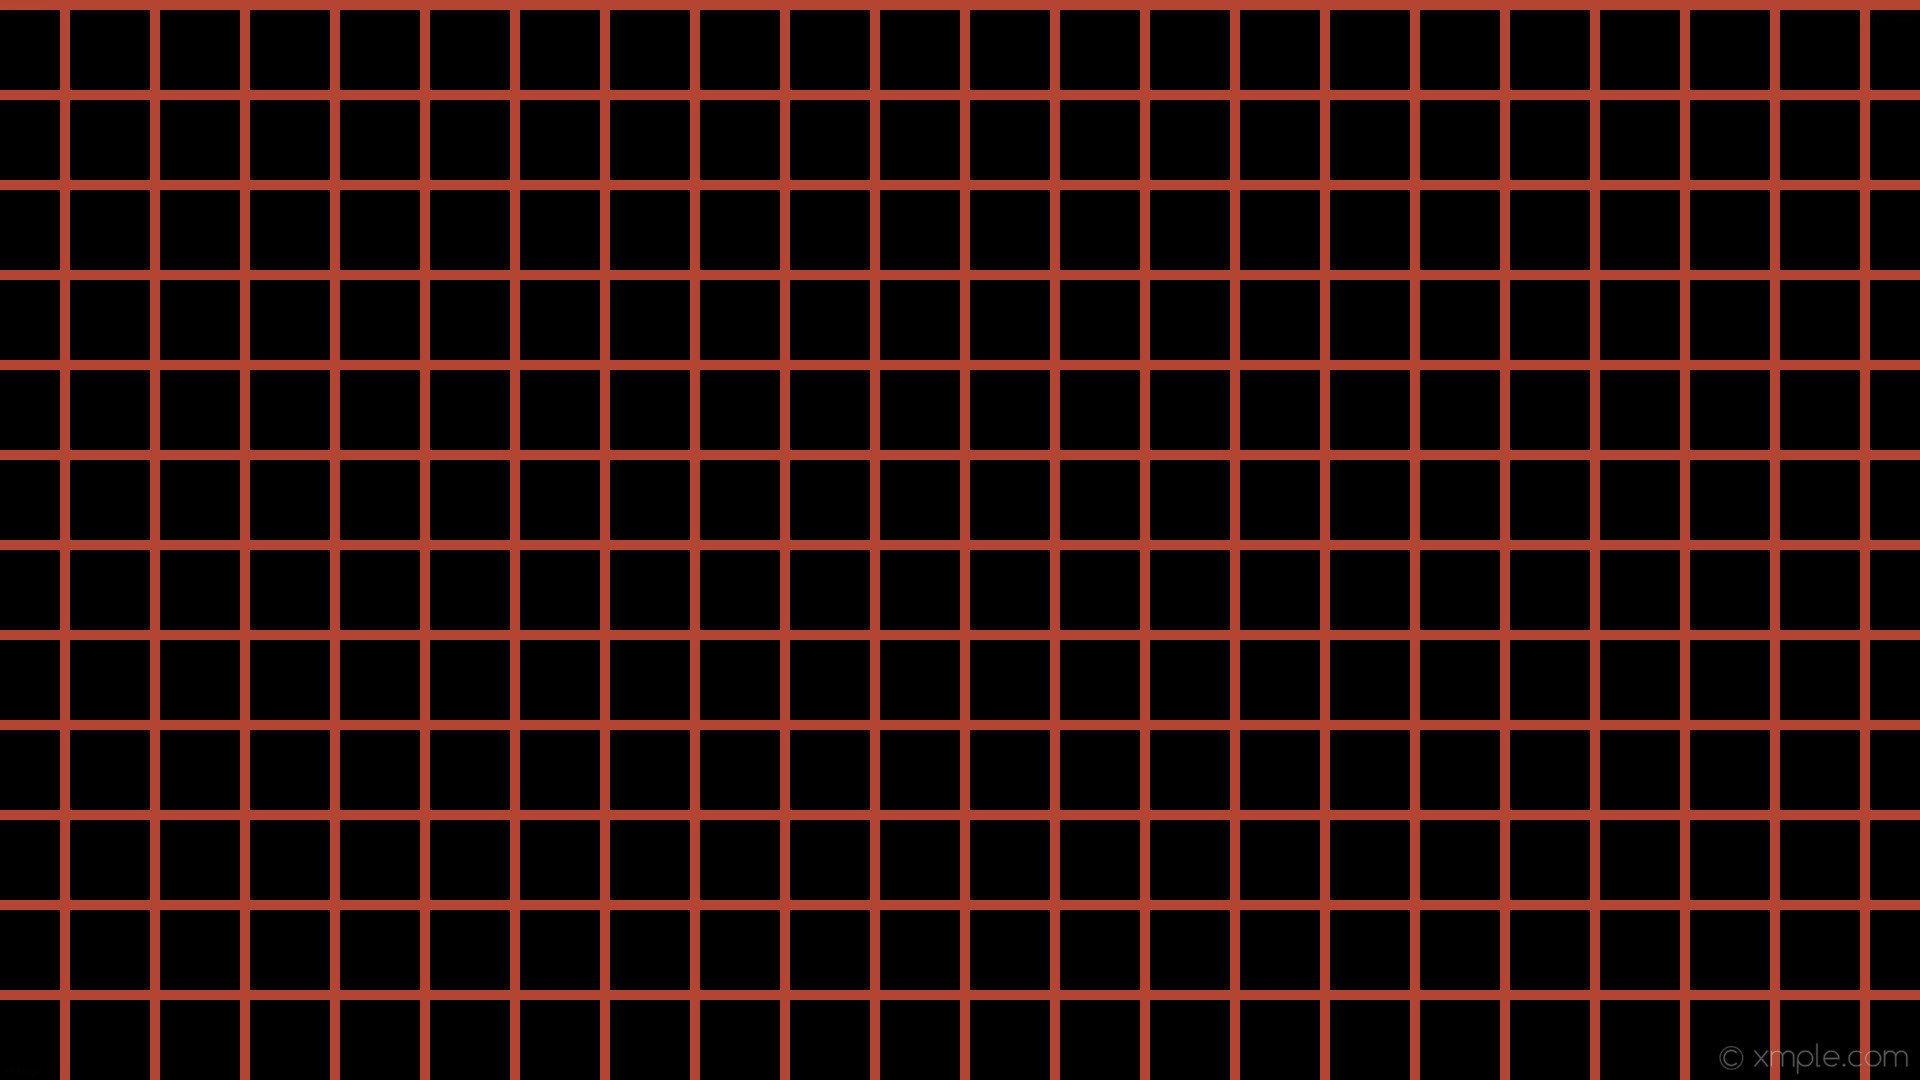 wallpaper graph paper black orange grid tomato #ff6347 0Â° 10px 90px